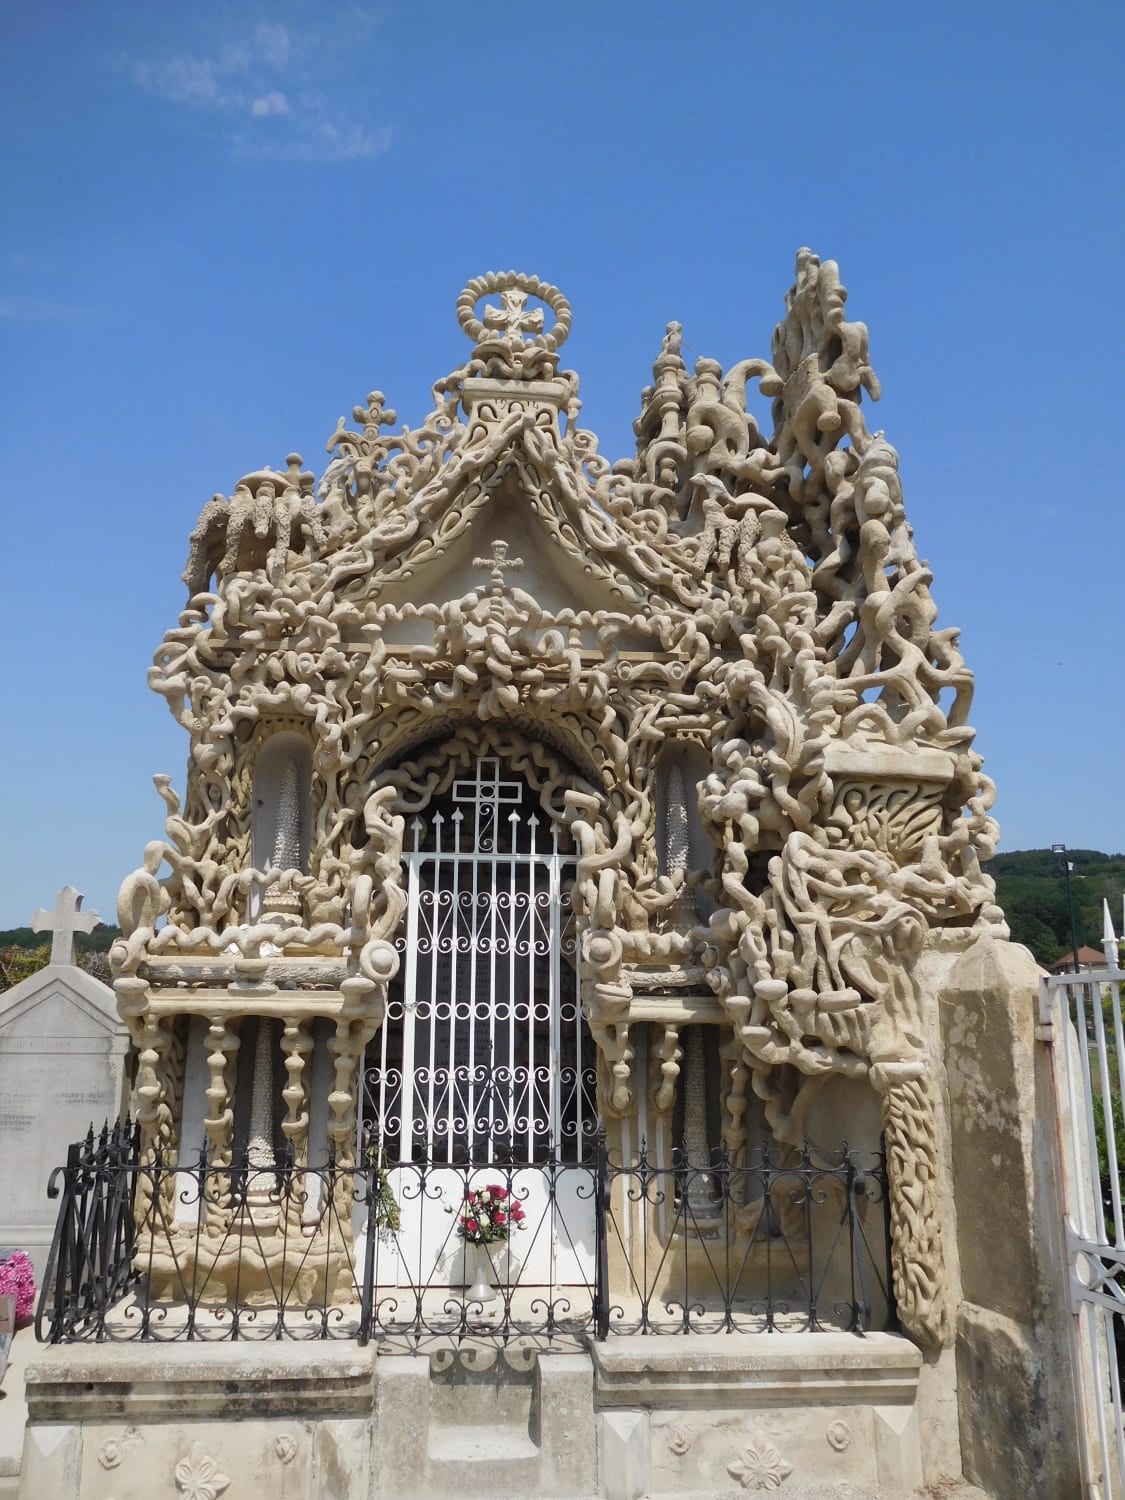 Ferdinand Cheval, builder of Le Palais idéal, also designed his own mausoleum, Hauterives, France